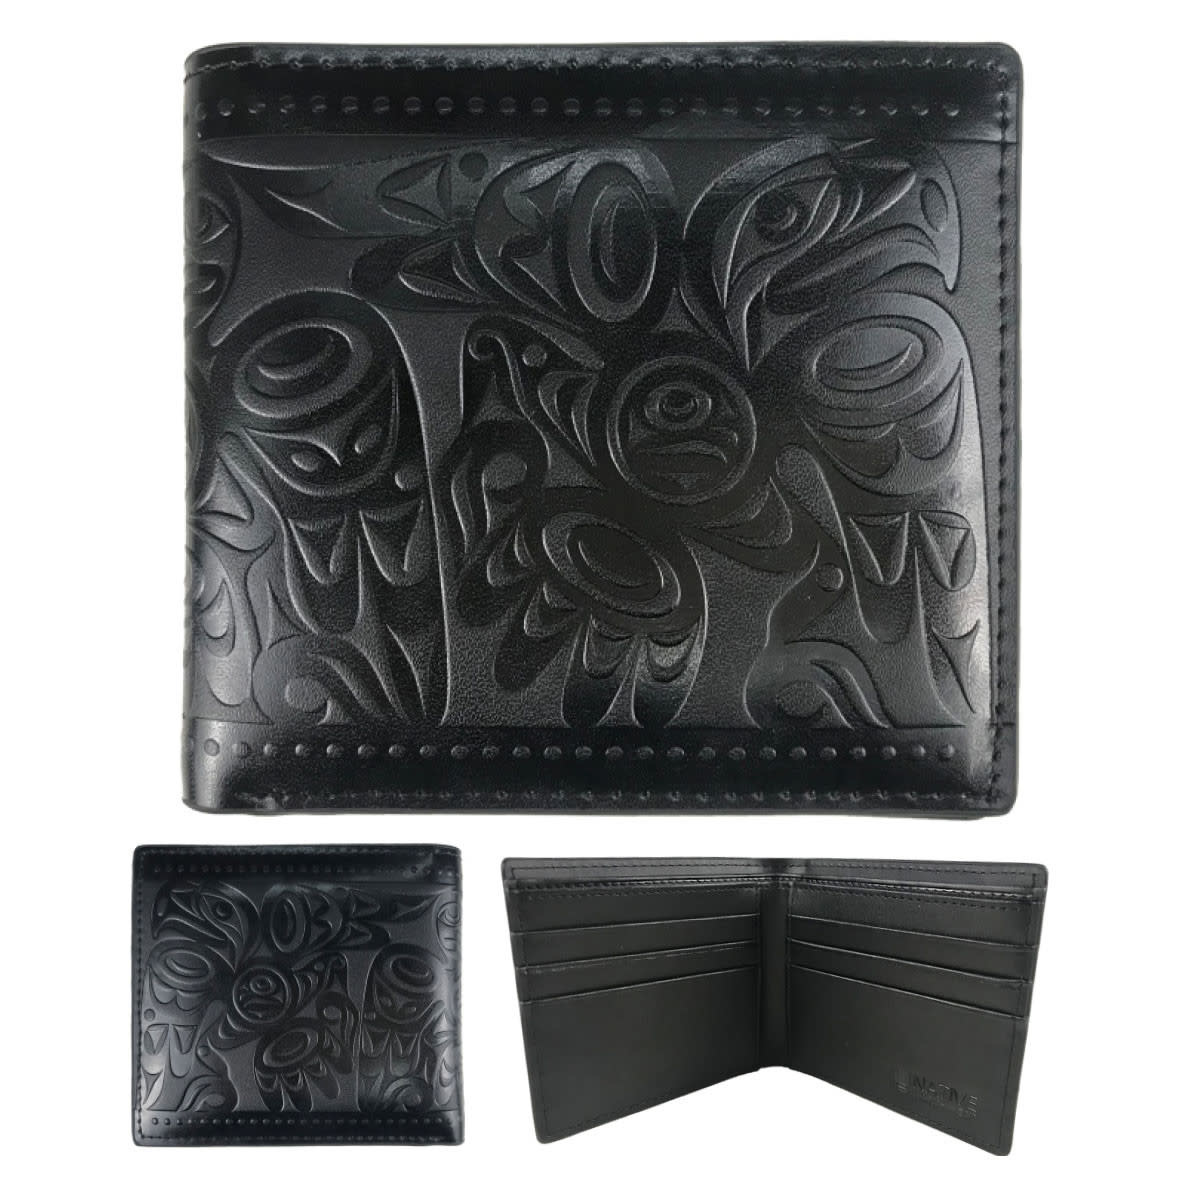 Leather Embossed Wallet - Salish Eagle by Joe Wilson-Sxwaset-1